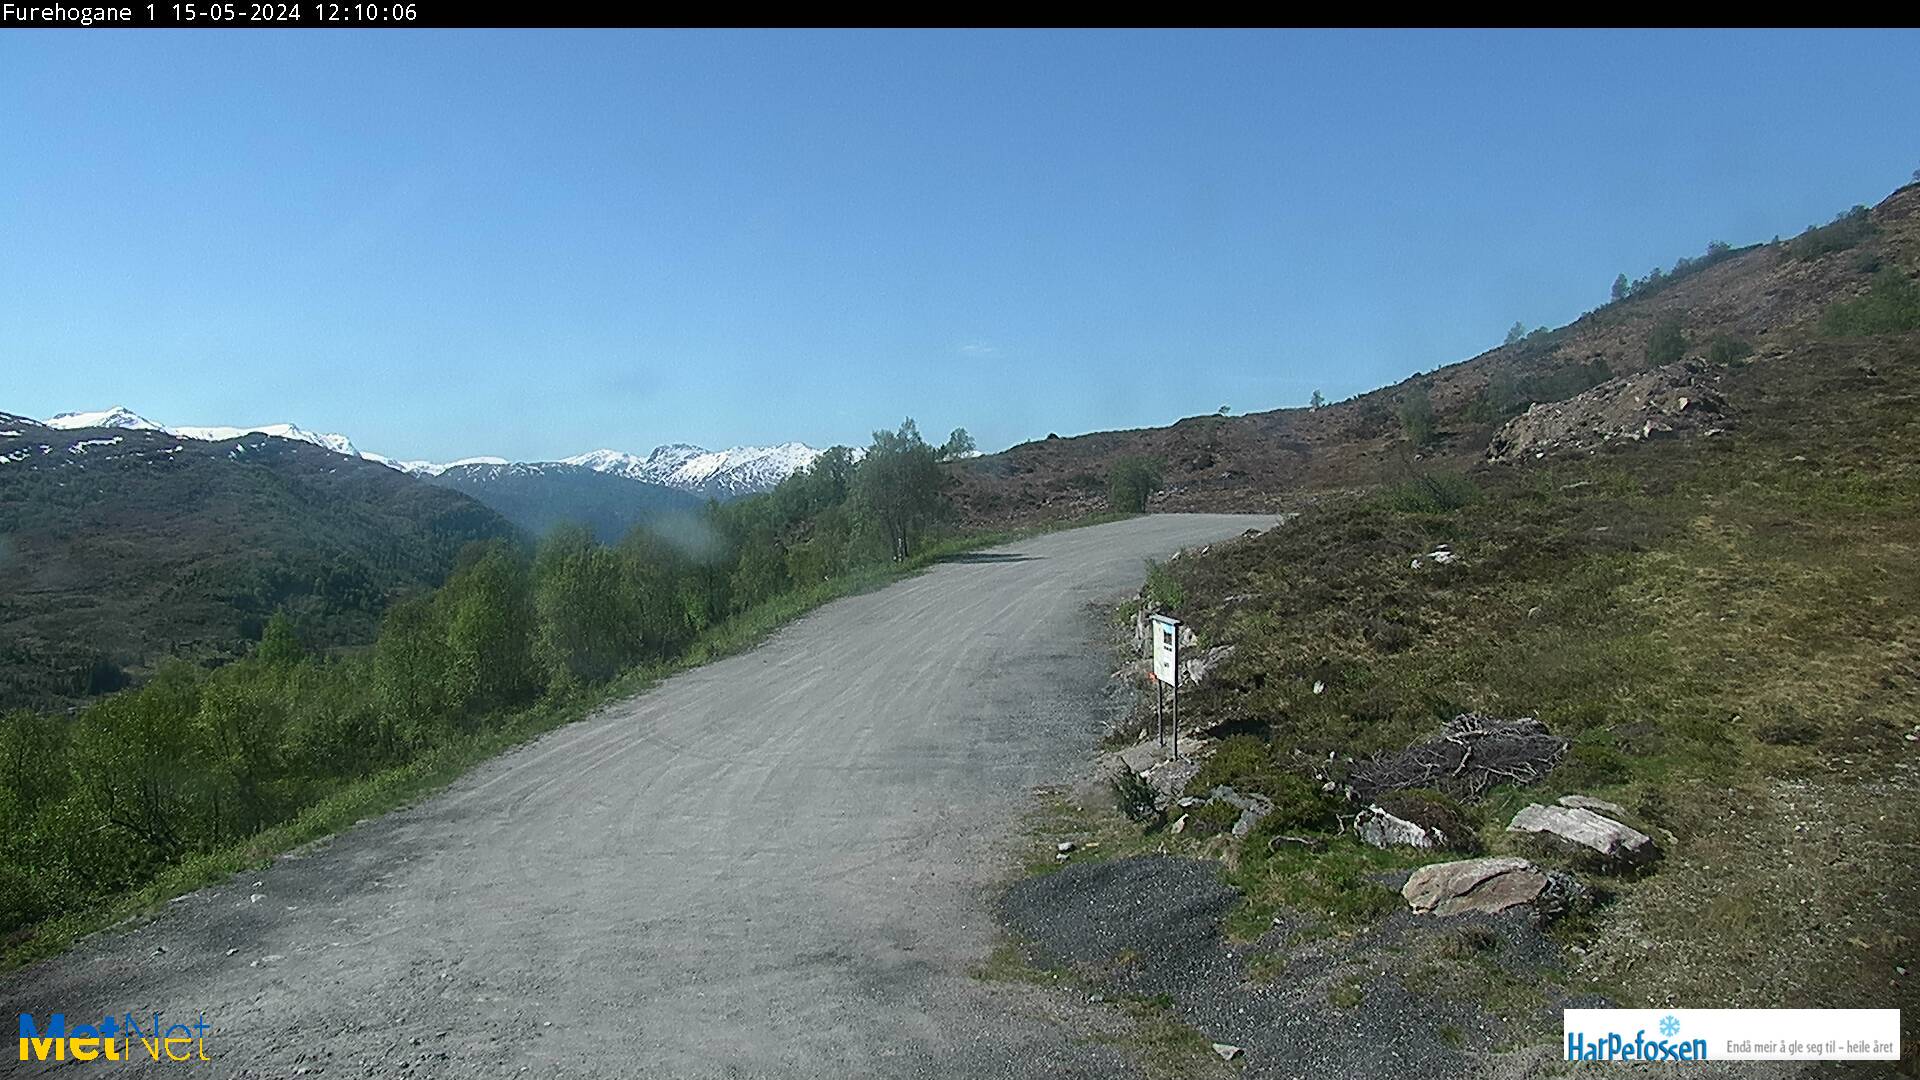 Webcam Harpefossen Skisenter, Eid, Sogn og Fjordane, Norwegen